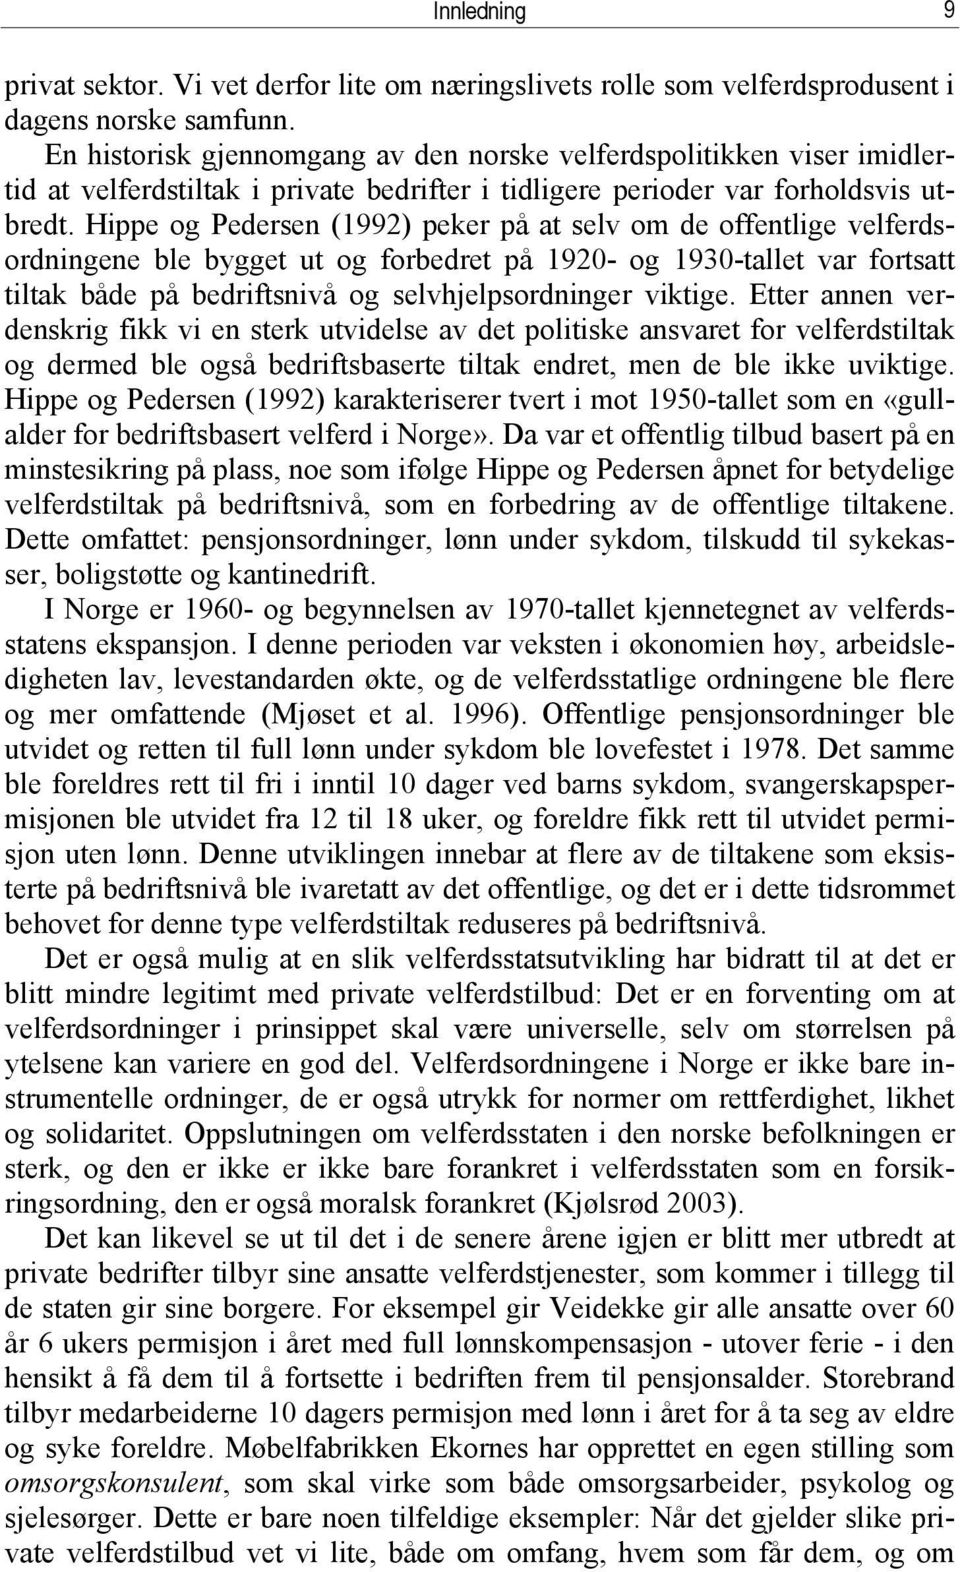 Hippe og Pedersen (1992) peker på at selv om de offentlige velferdsordningene ble bygget ut og forbedret på 1920- og 1930-tallet var fortsatt tiltak både på bedriftsnivå og selvhjelpsordninger